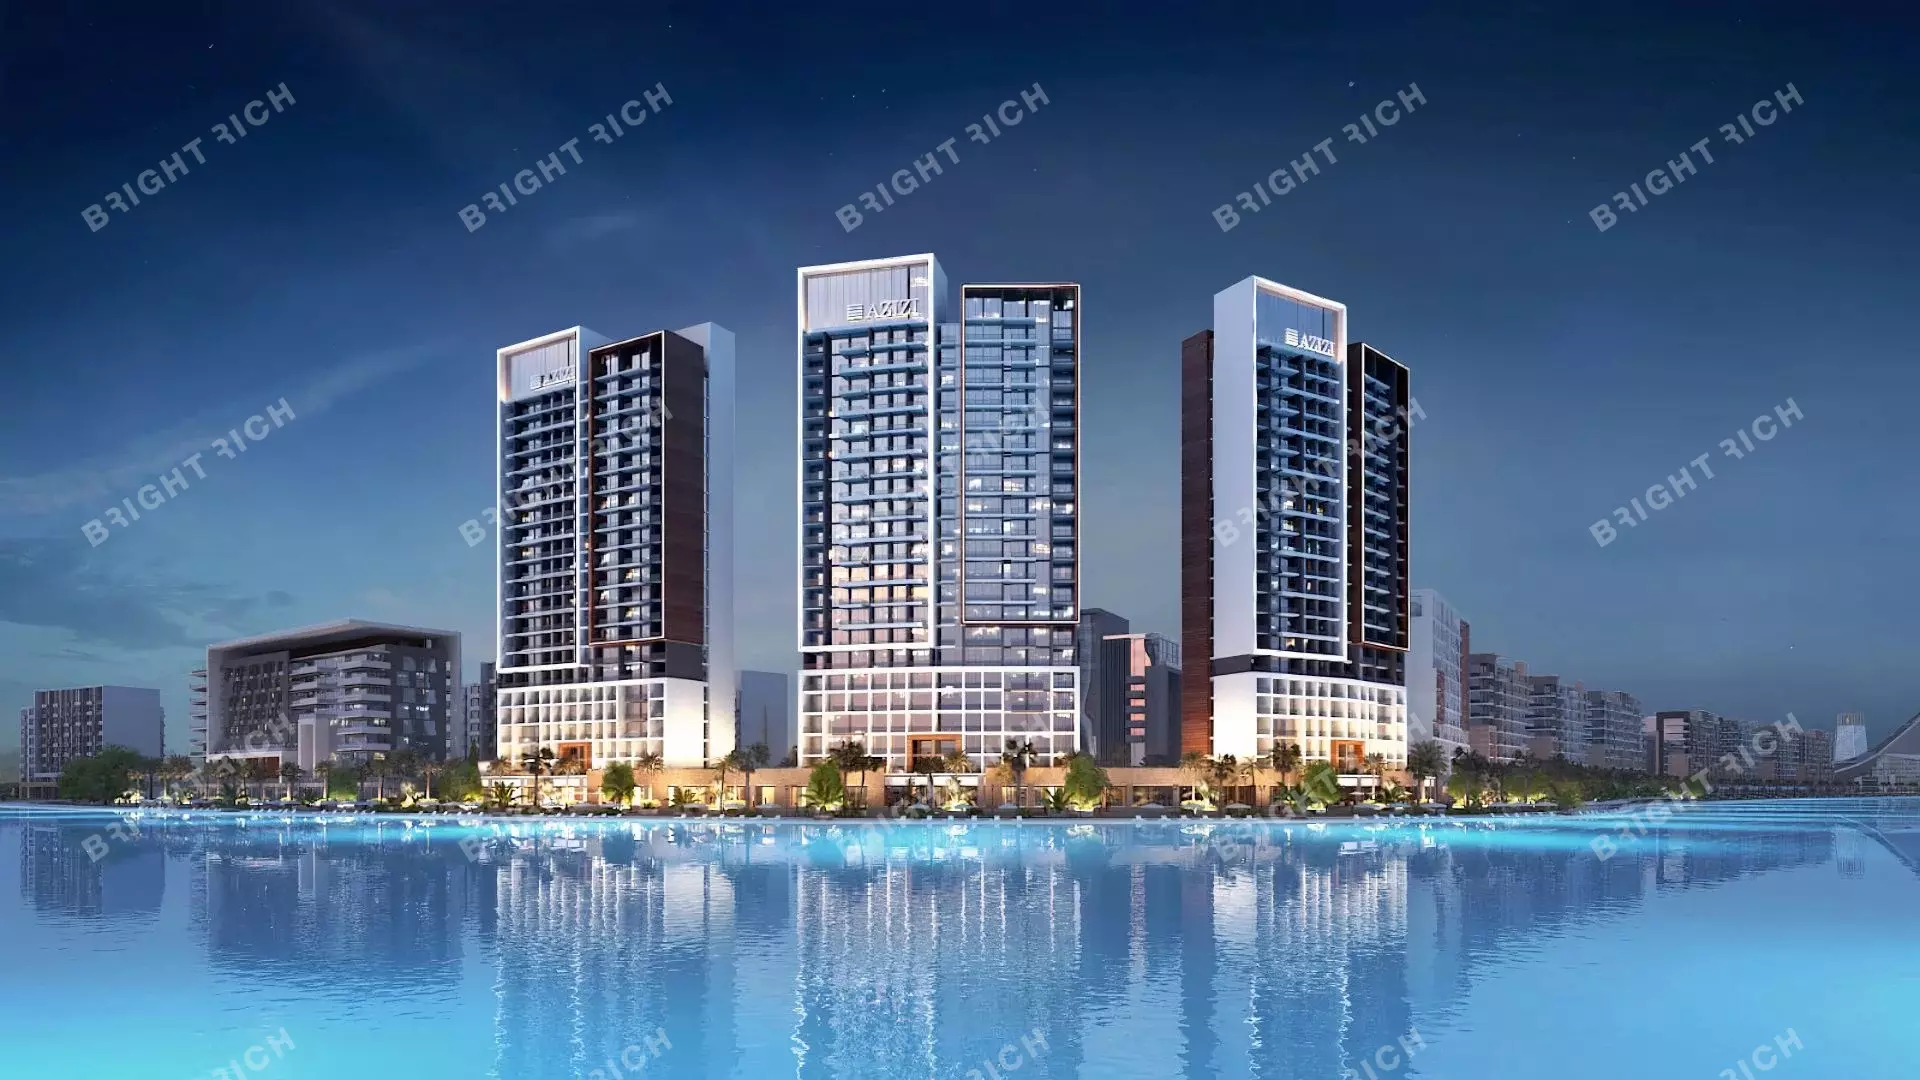 Azizi Riviera Building 31, apart complex in Dubai